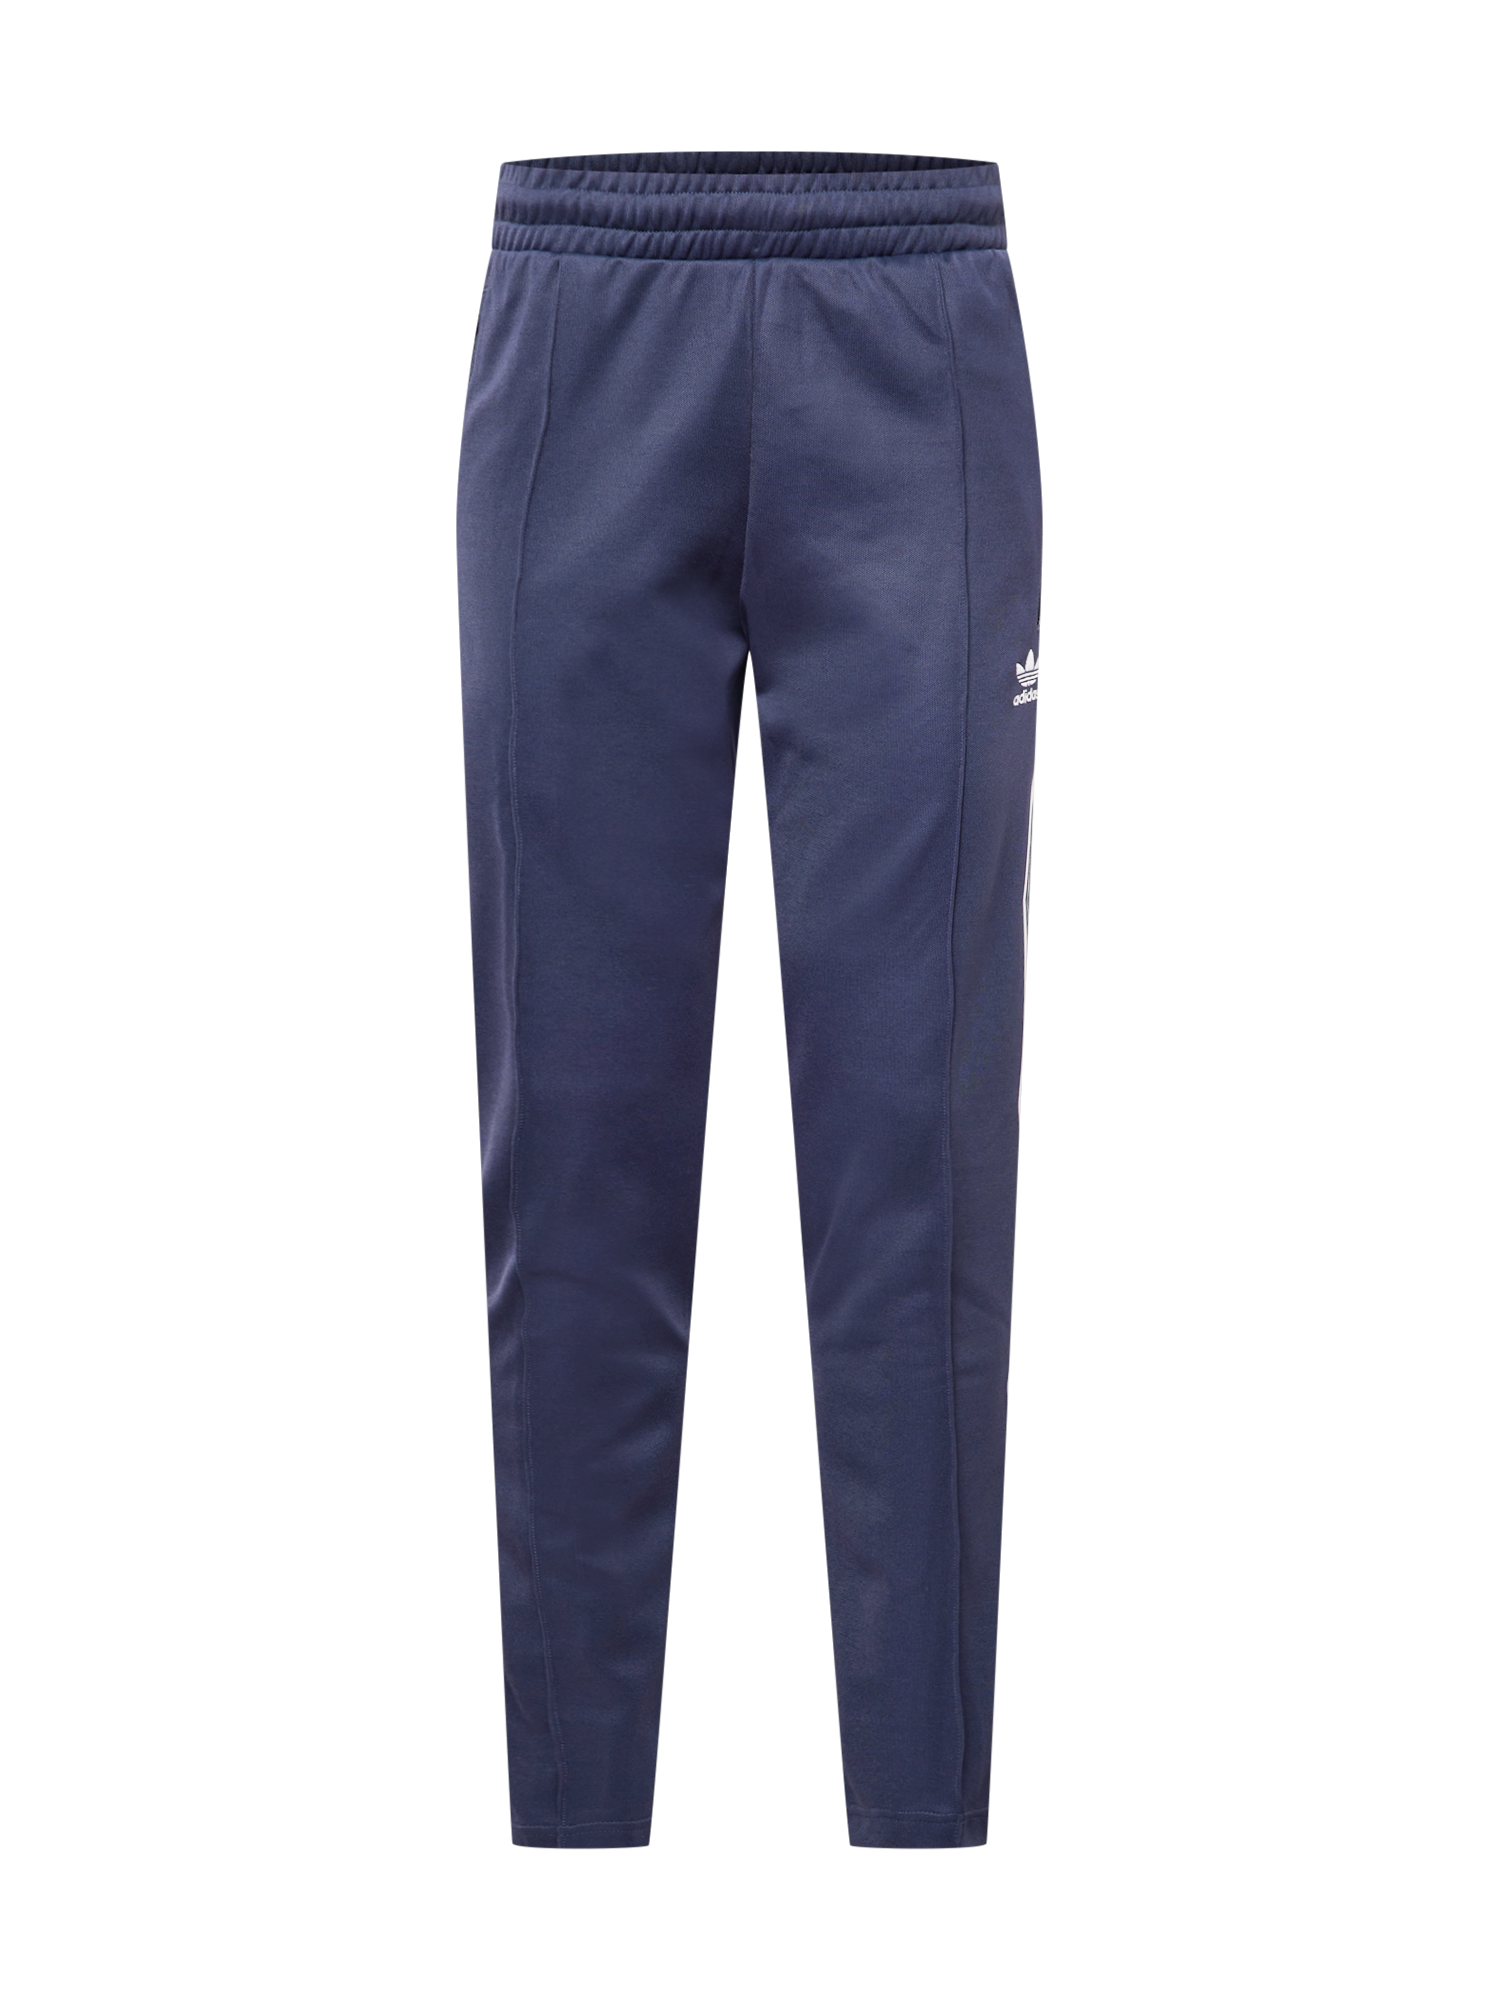 Bluzy Odzież ADIDAS ORIGINALS Spodnie Beckenbauer w kolorze Atramentowym 